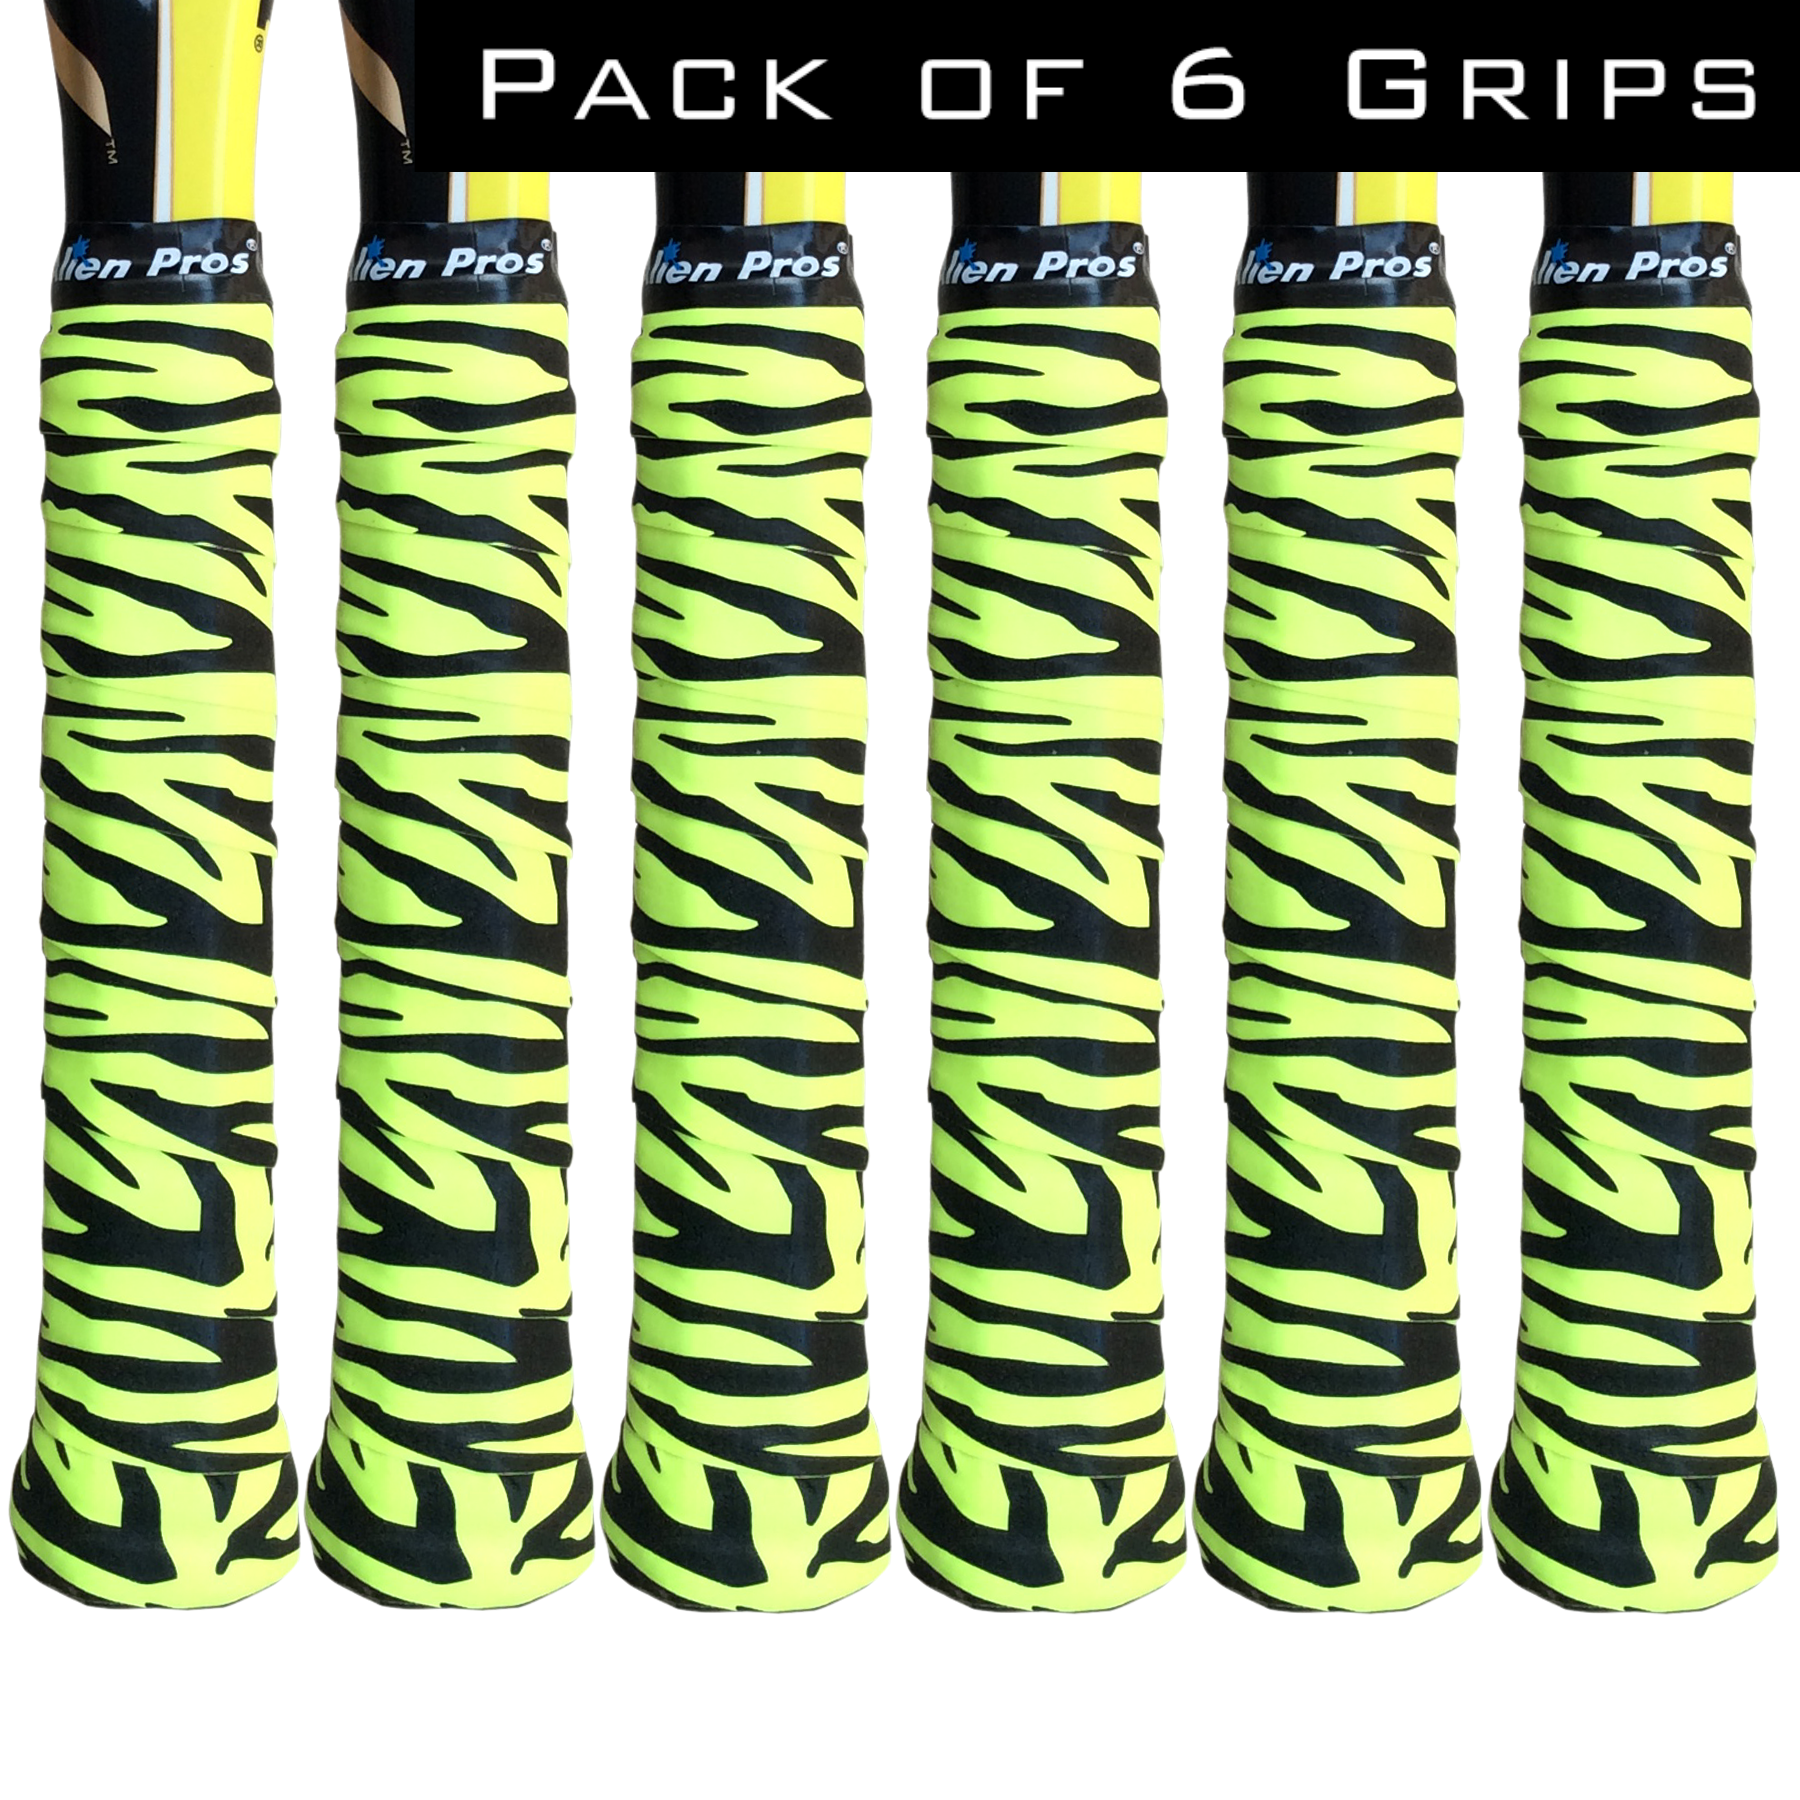 Alien Pros X-Dry - Cinta de Tenis (6 Unidades), Perfecta para su Raqueta de  Tenis, Agarre de Baloncesto, Pala de Squash y más, White, Pink, Green, Red,  Yellow, Purple, Paquete 6 